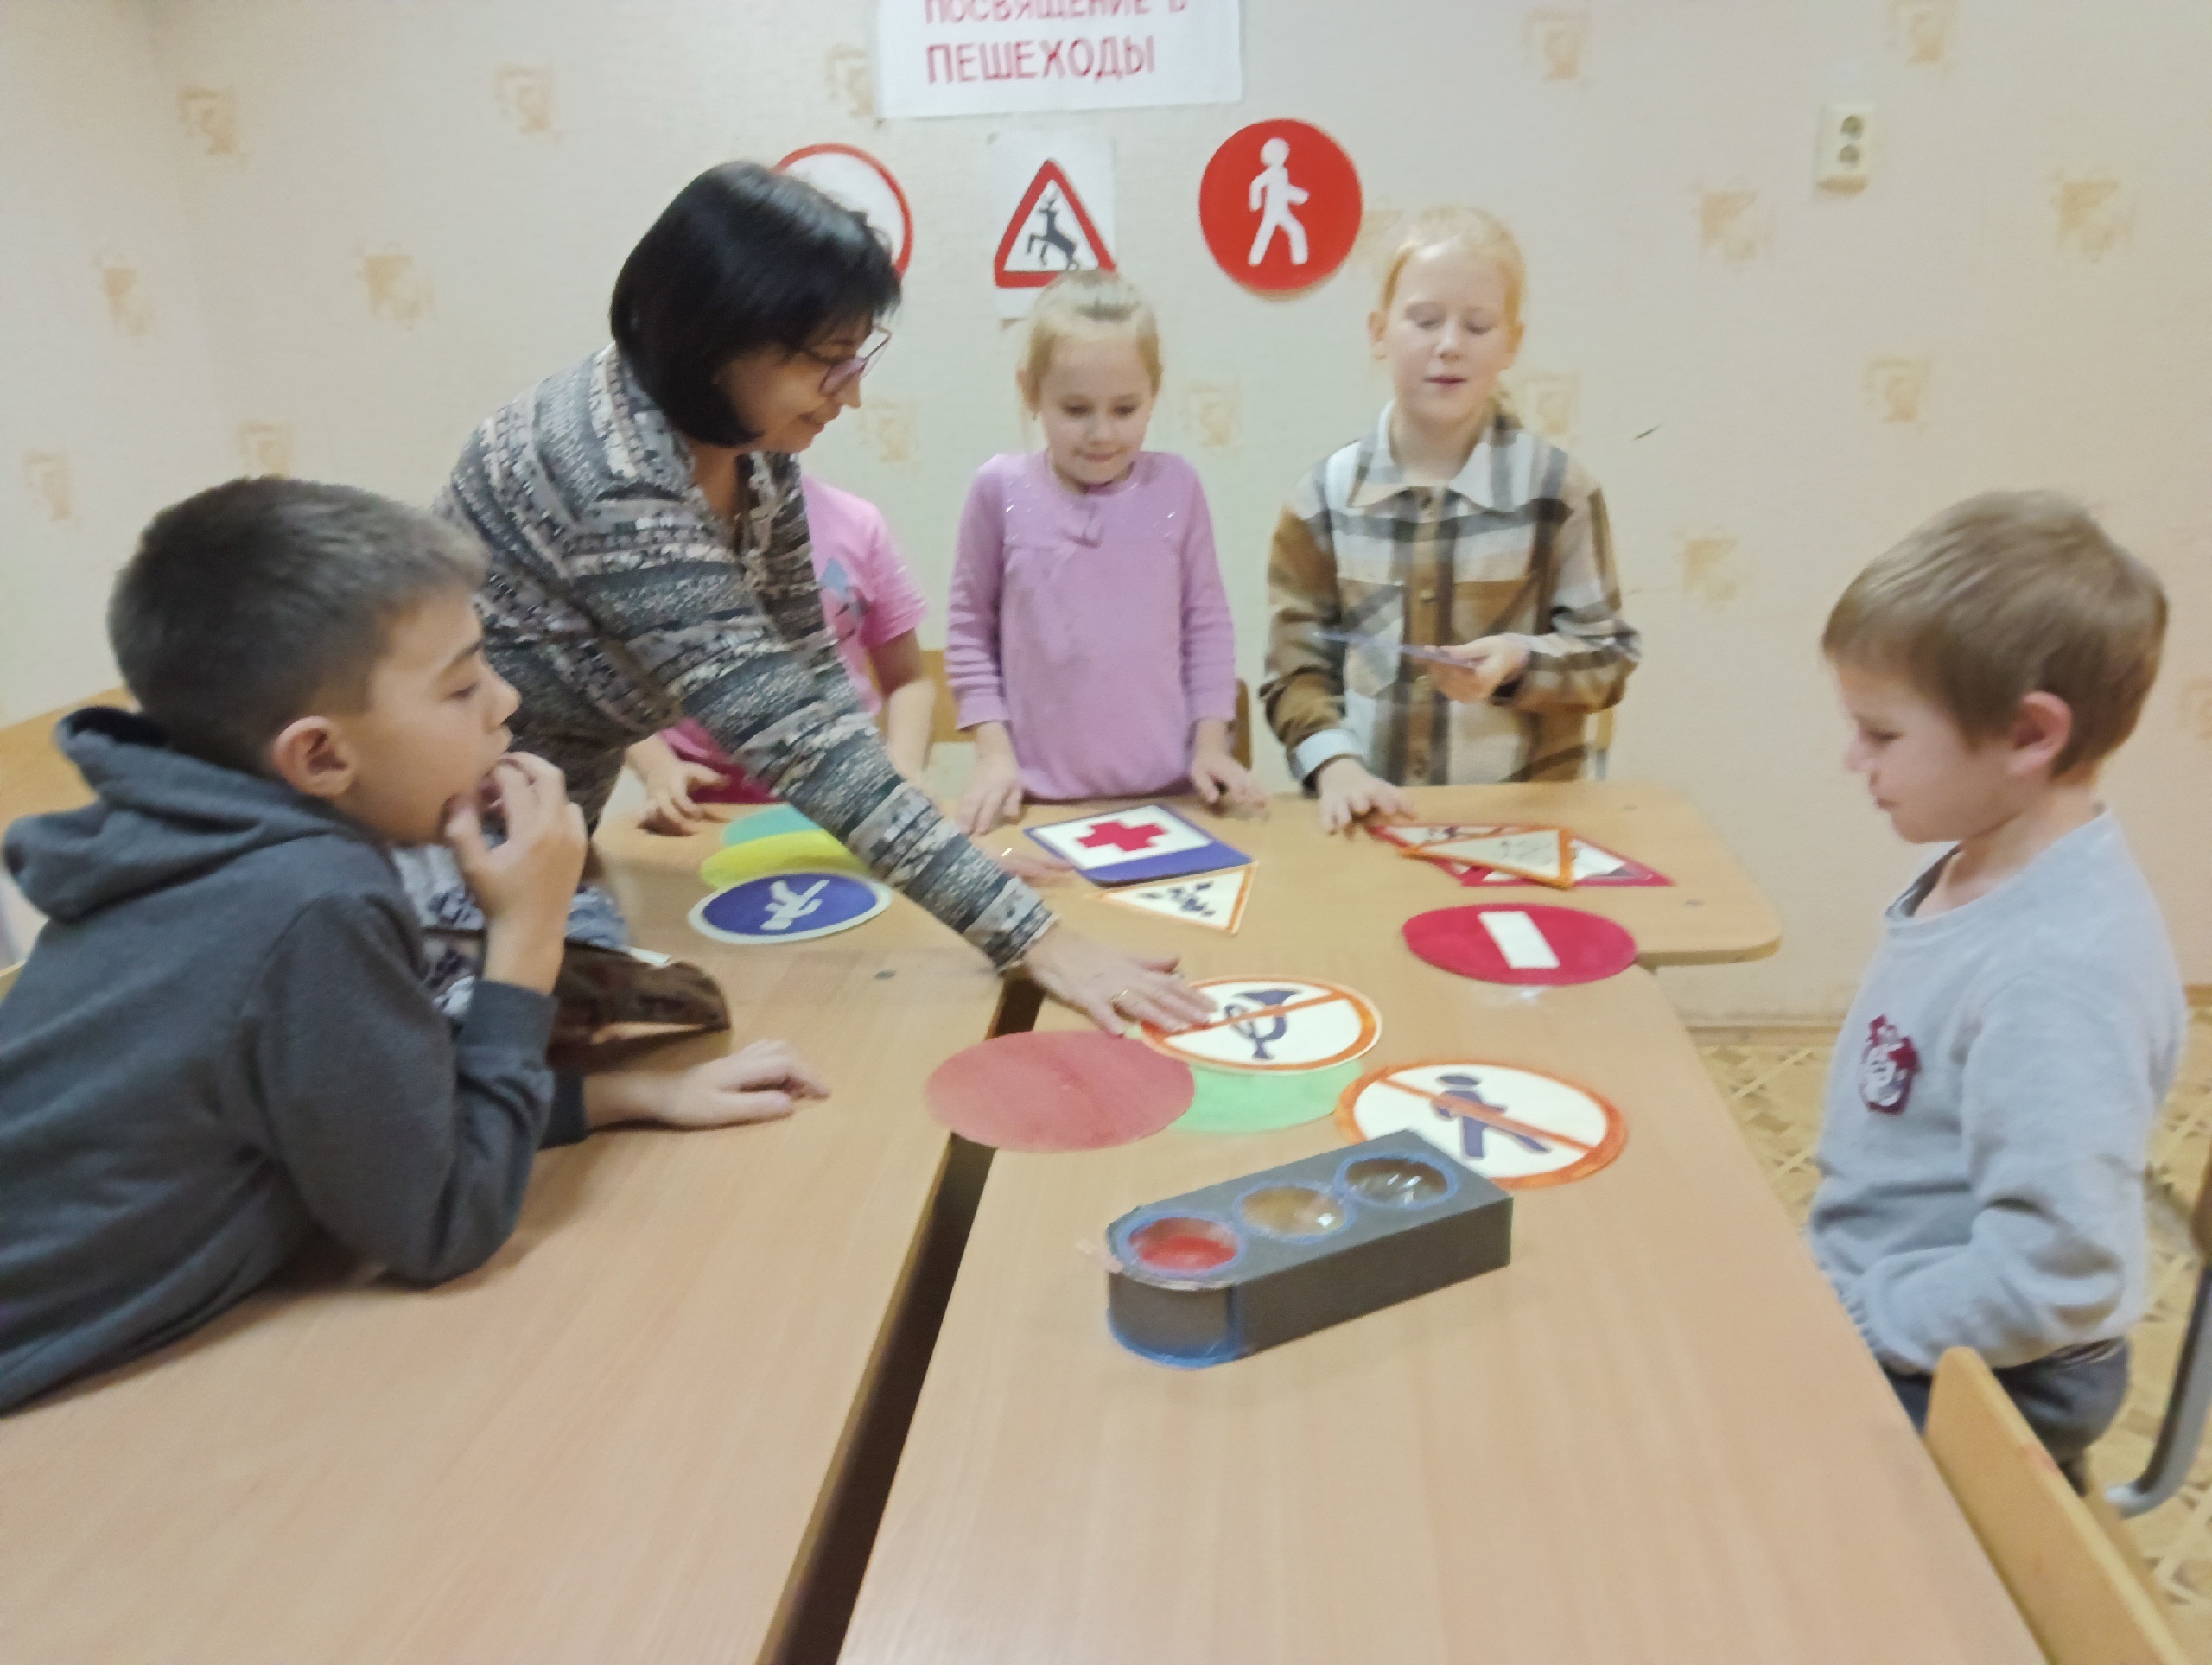 16 ноября педагог ДО Лиля Ахатовна Хайруллина провела познавательную квиз-игру "Осторожно